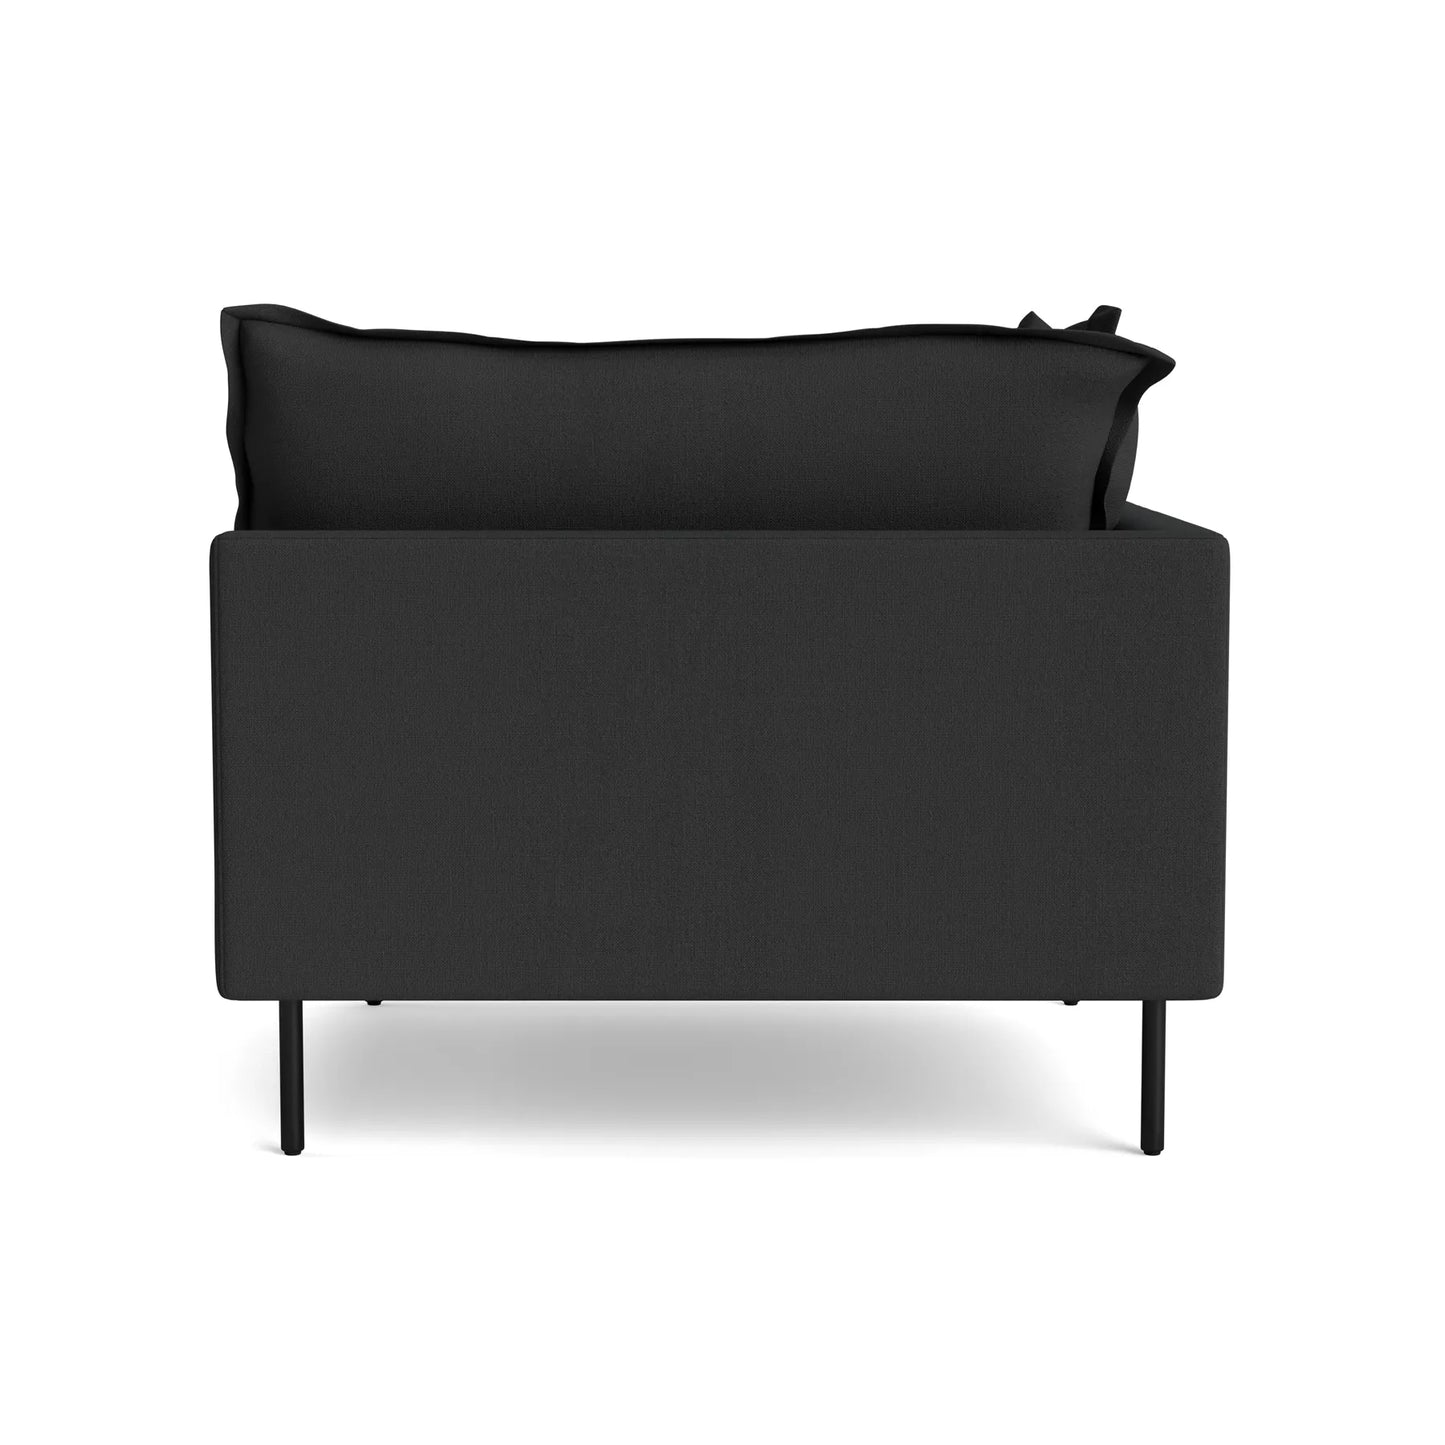 Seam Sofa Corner - Siena Charcoal